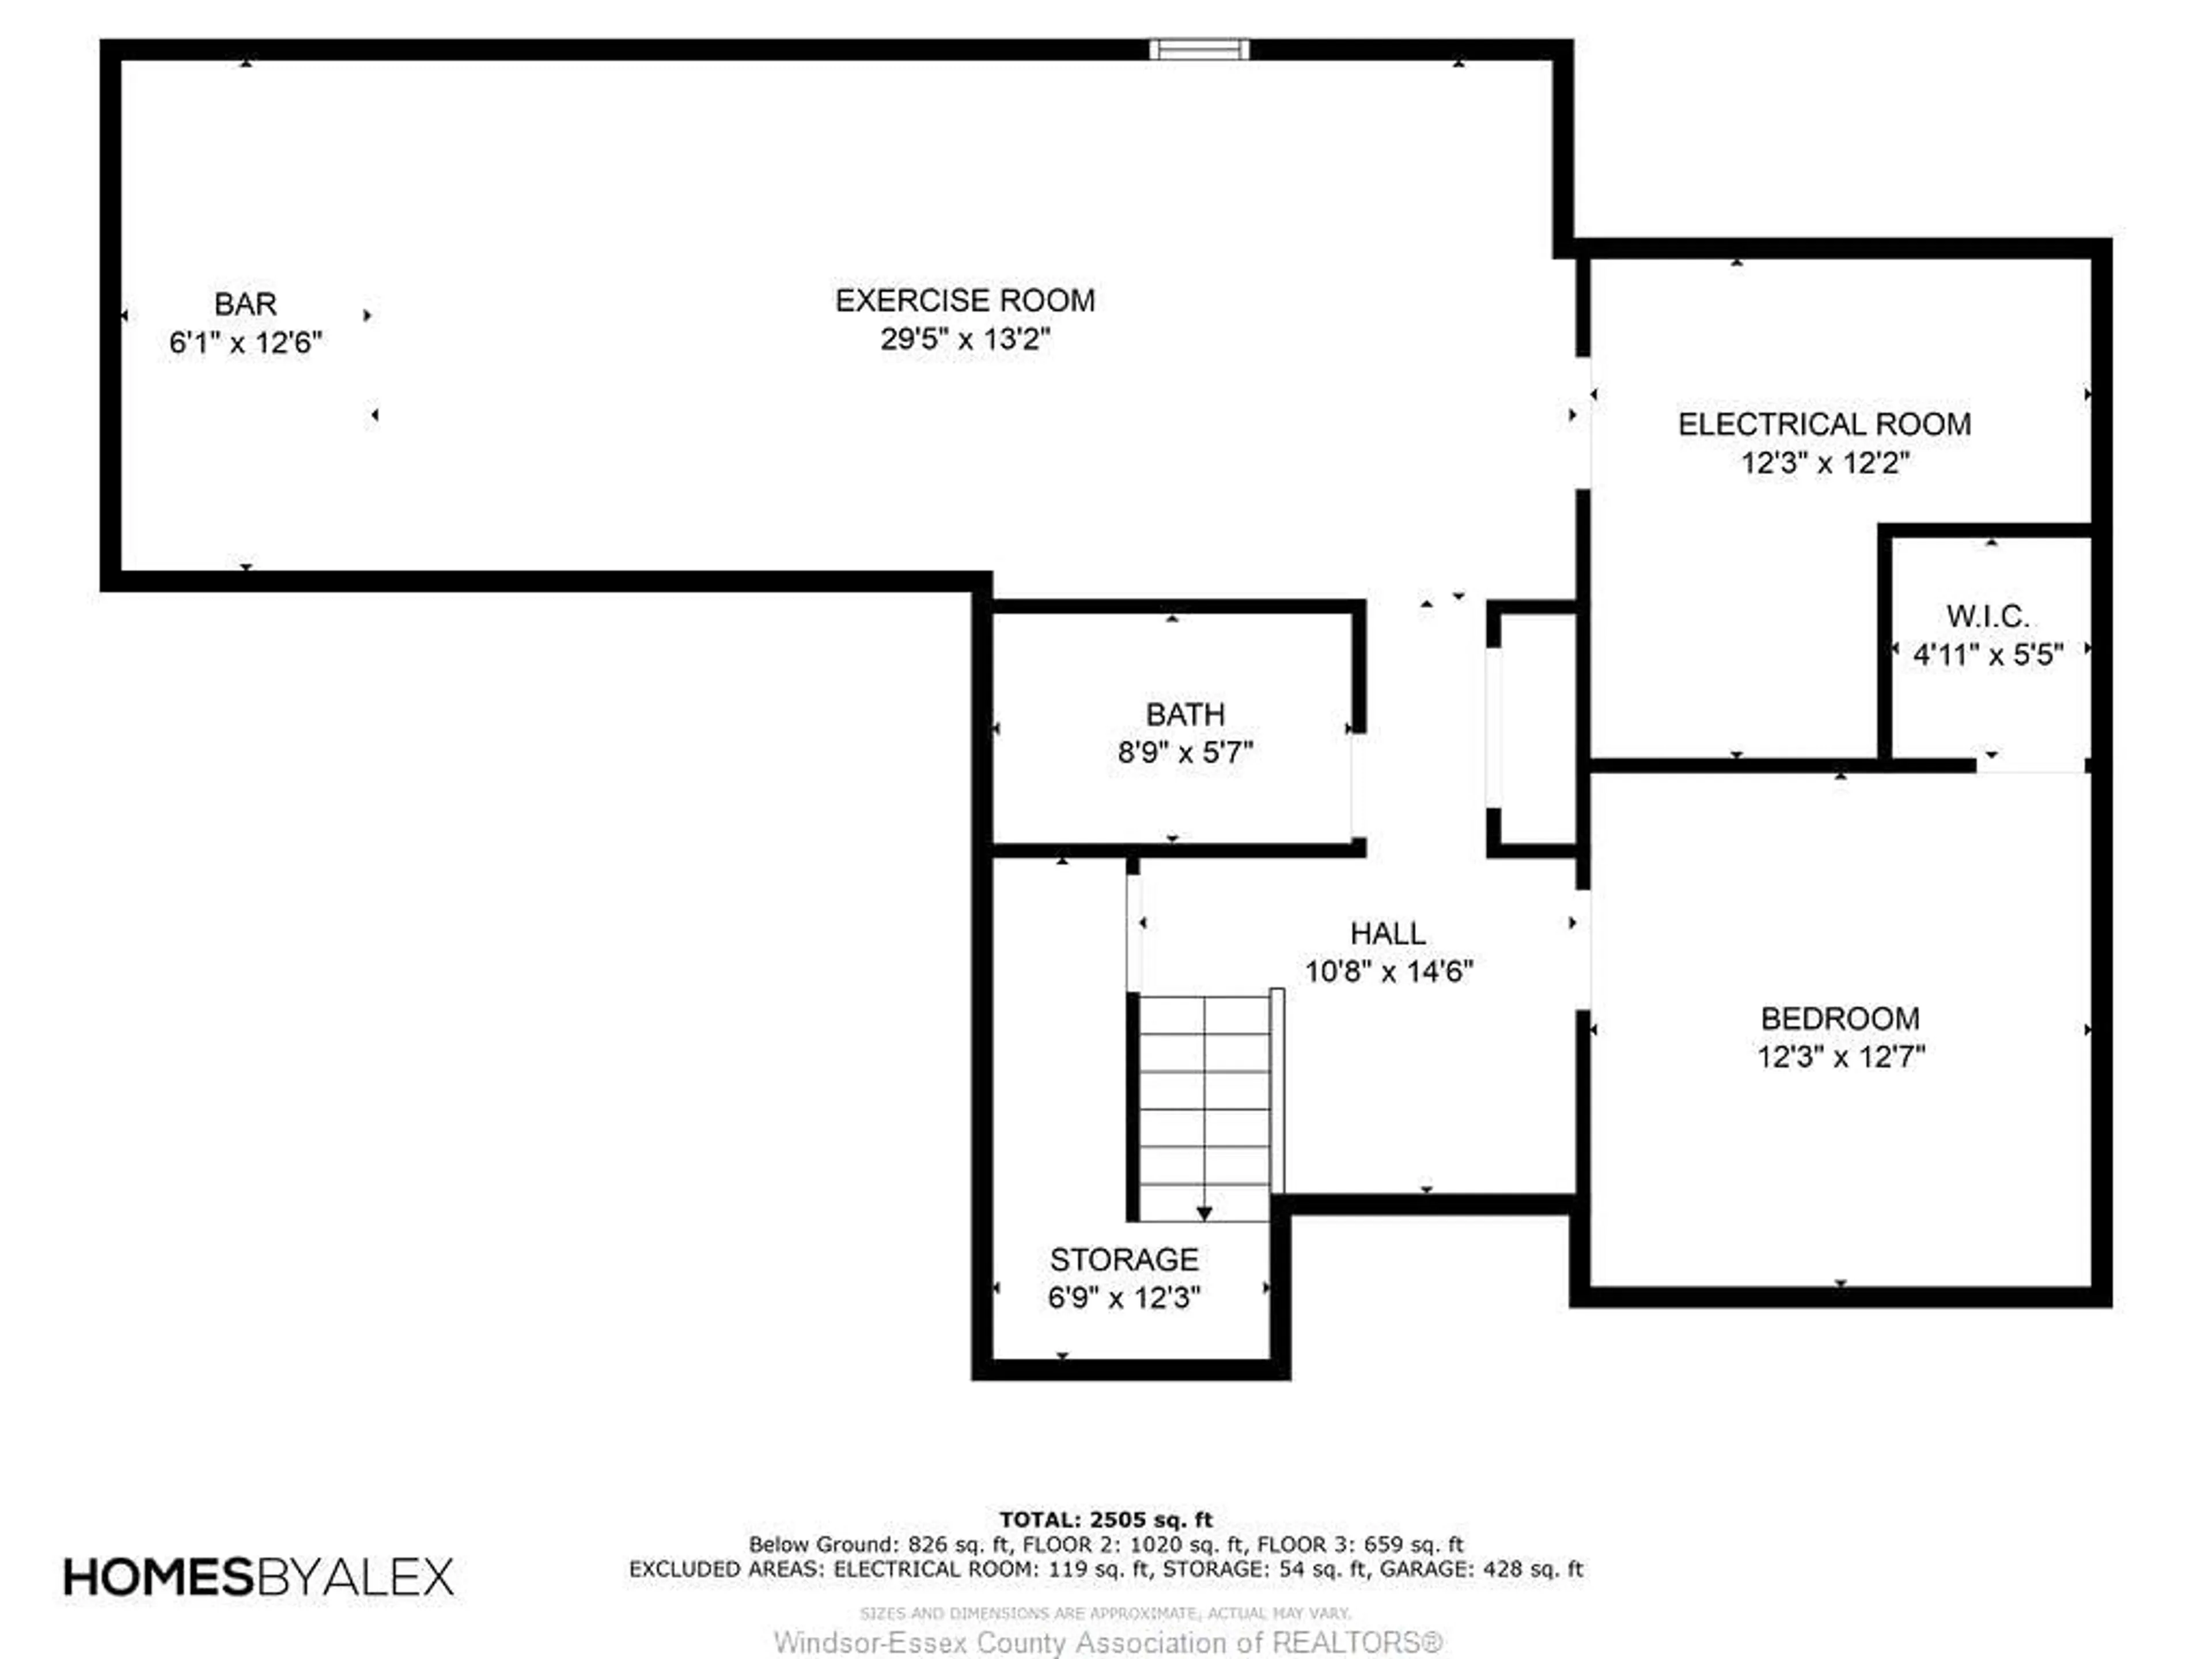 Floor plan for 168 OAK Dr, Essex Ontario N8M 3C8